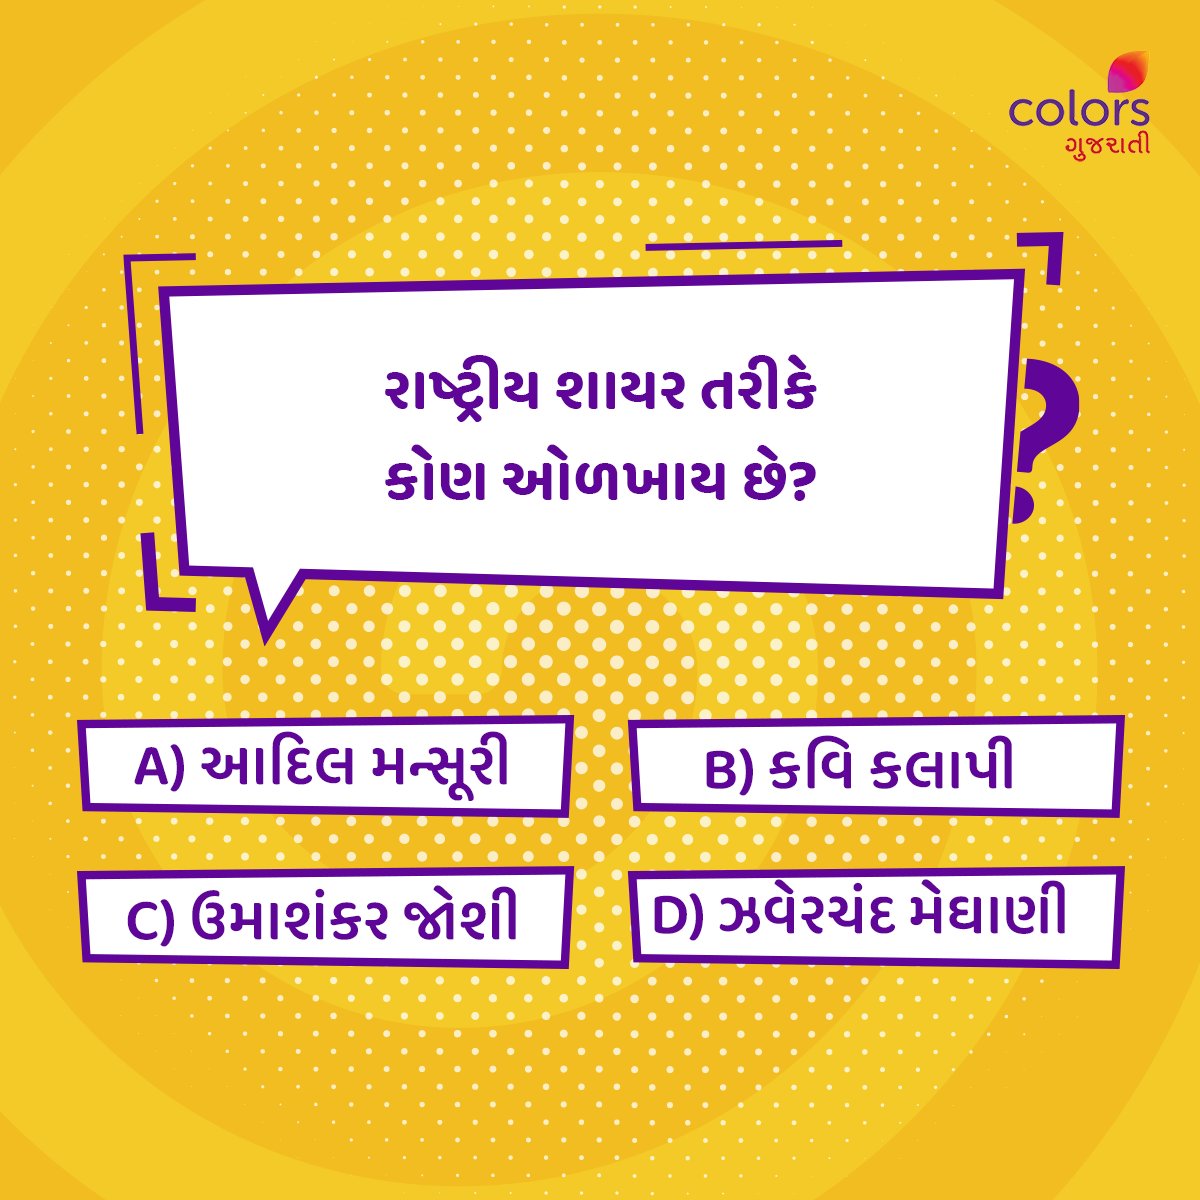 શું તમે આ પ્રશ્નનો ઉત્તર જાણો છો? જલ્દીથી Comment કરો.  

#Colorsgujarati #Gujarat #Quiz #Facts #generalquiz